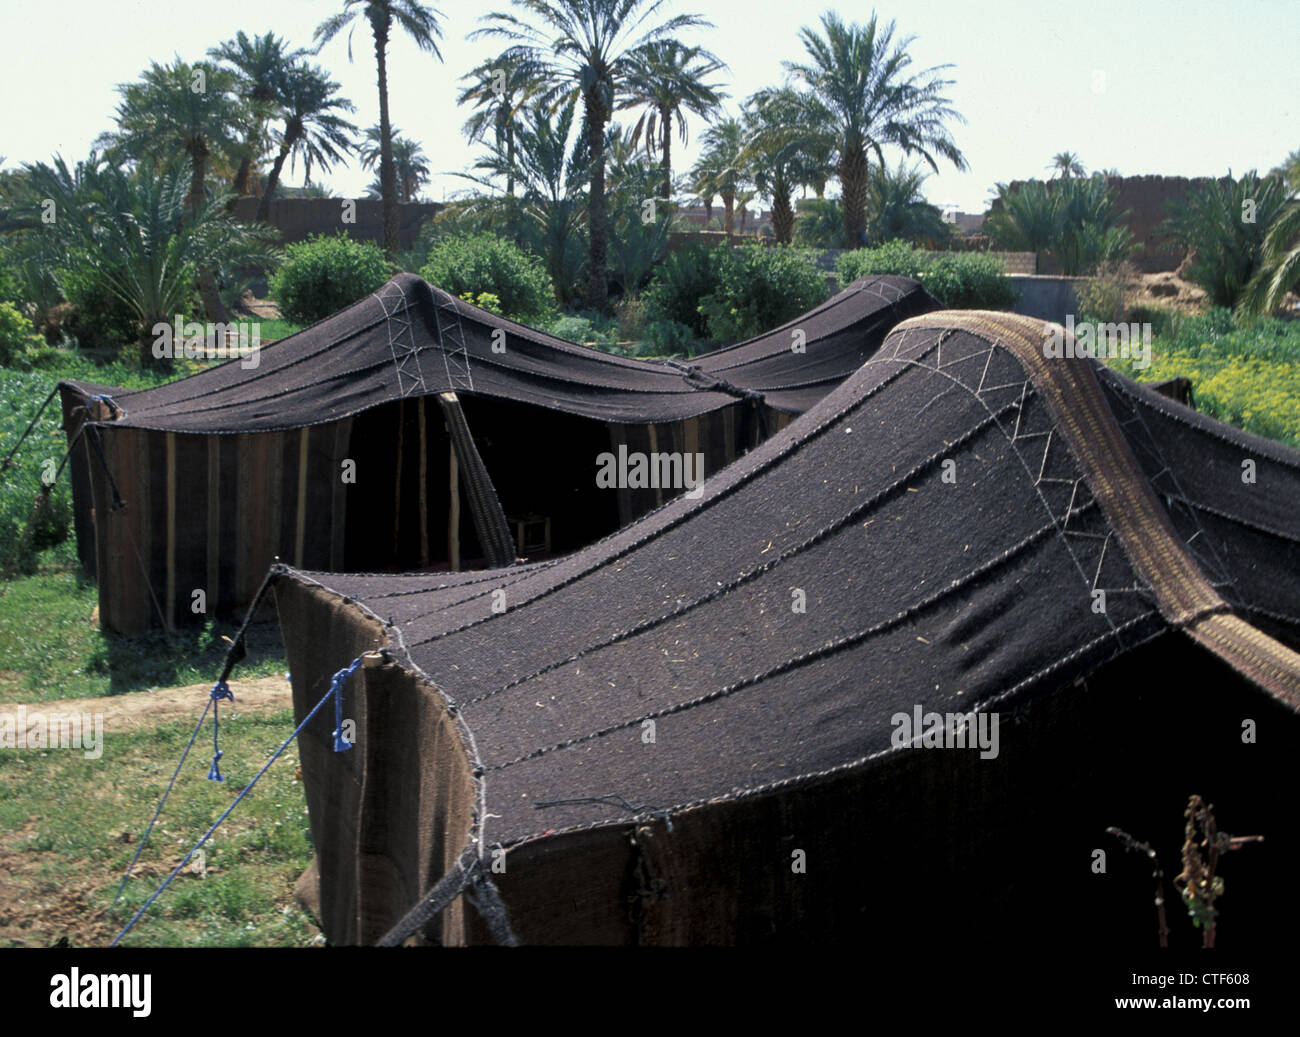 Tradizionale tende Beduino situato in un'oasi del sud, Marocco Foto Stock